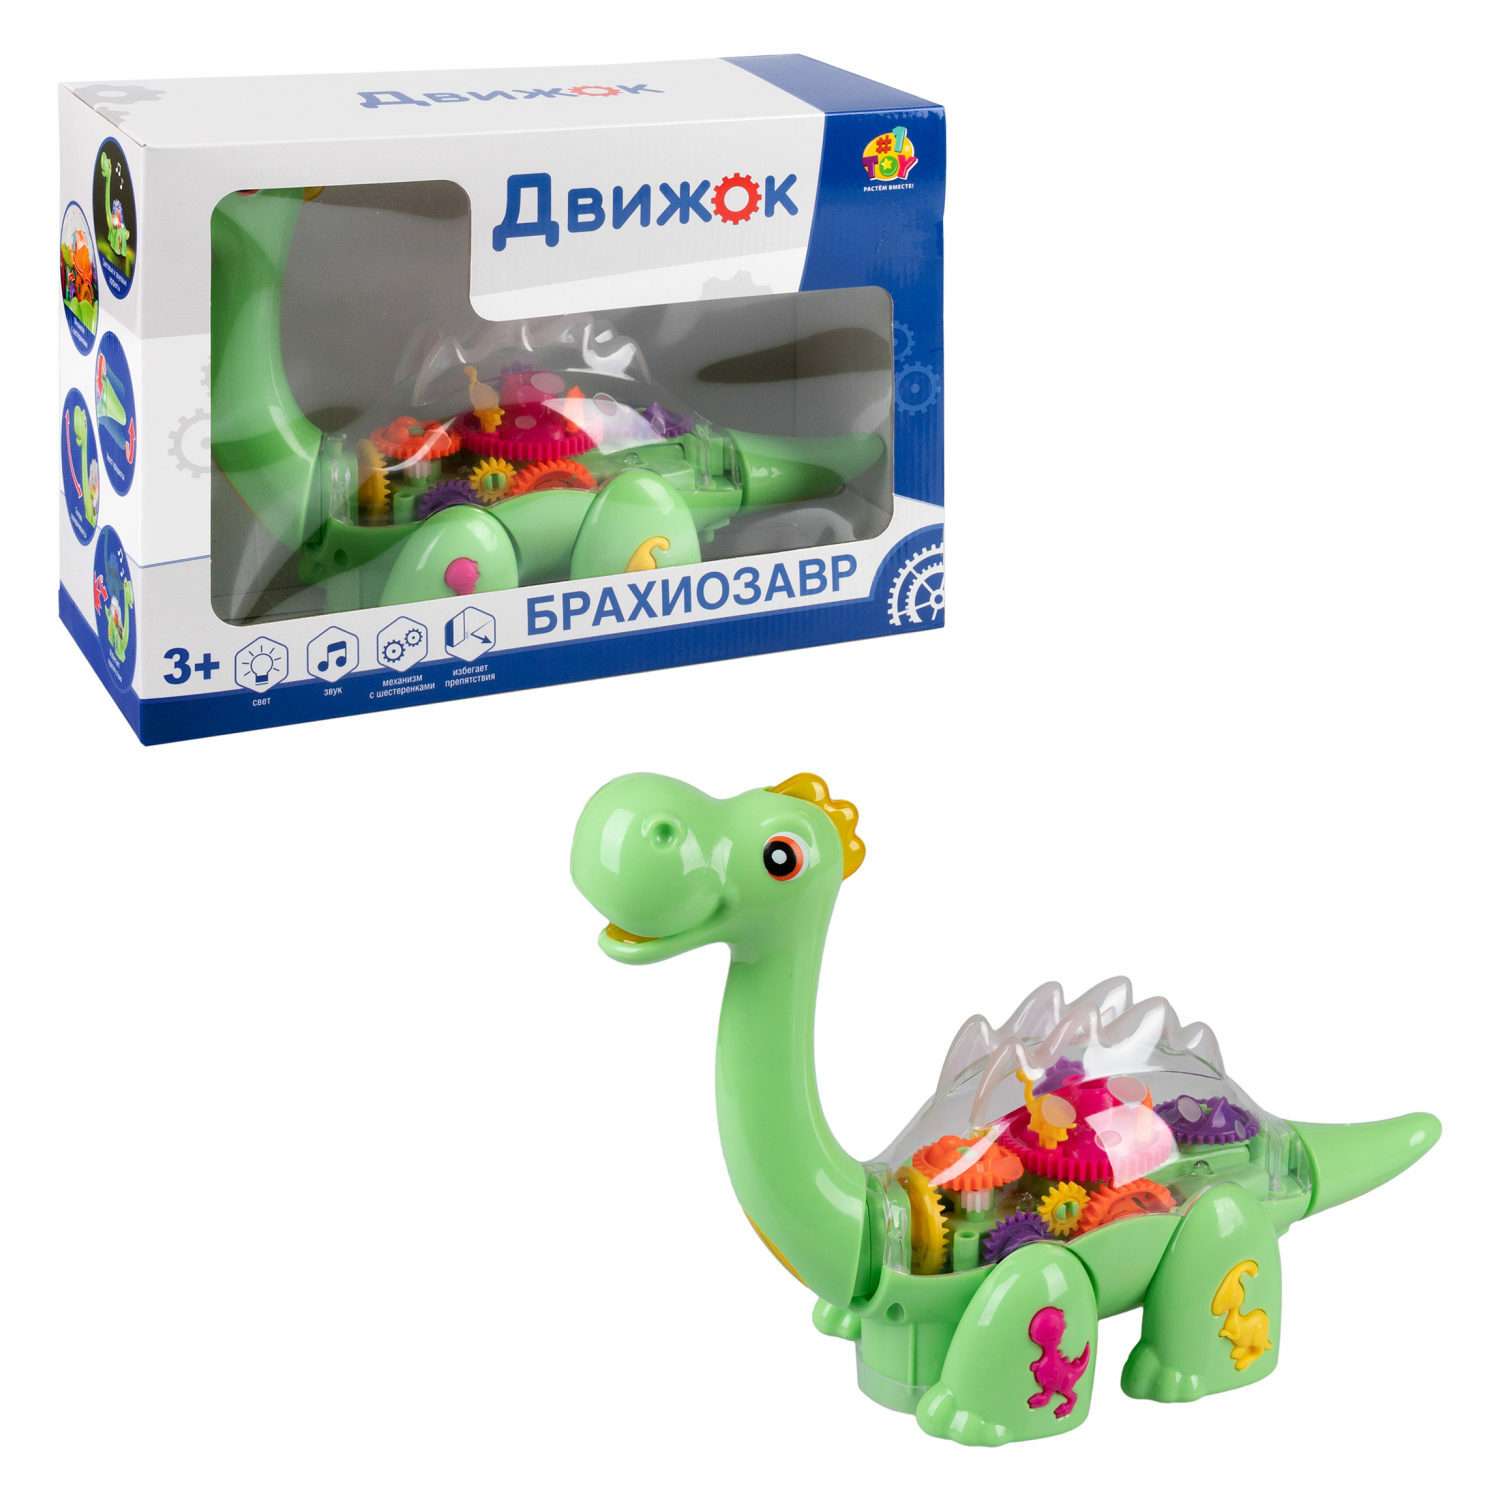 Детская игрушка динозавр 1TOY брахиозавр Движок прозрачная с шестеренками со светом и звуком - фото 1